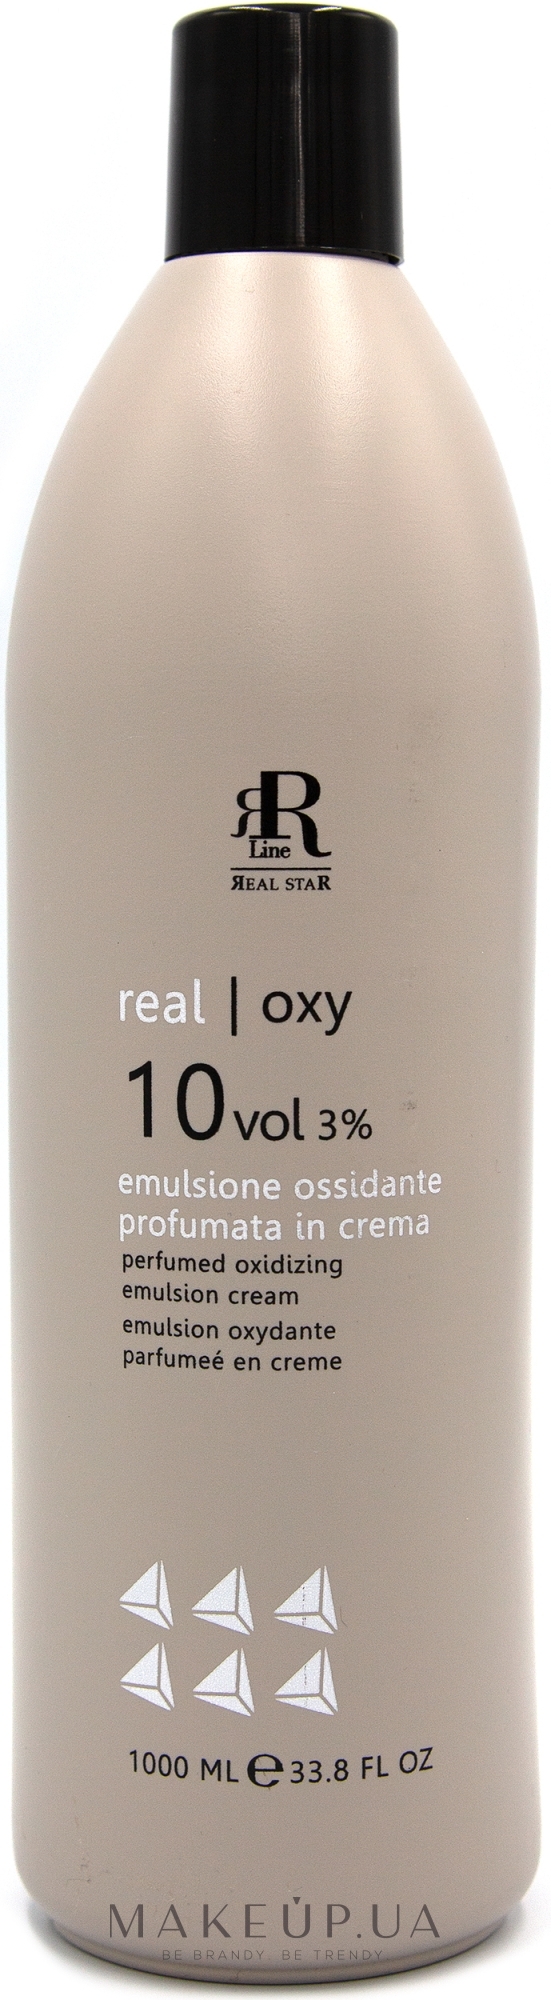 Парфюмированная окислительная эмульсия 3% - RR Line Parfymed Oxidizing Emulsion Cream — фото 1000ml